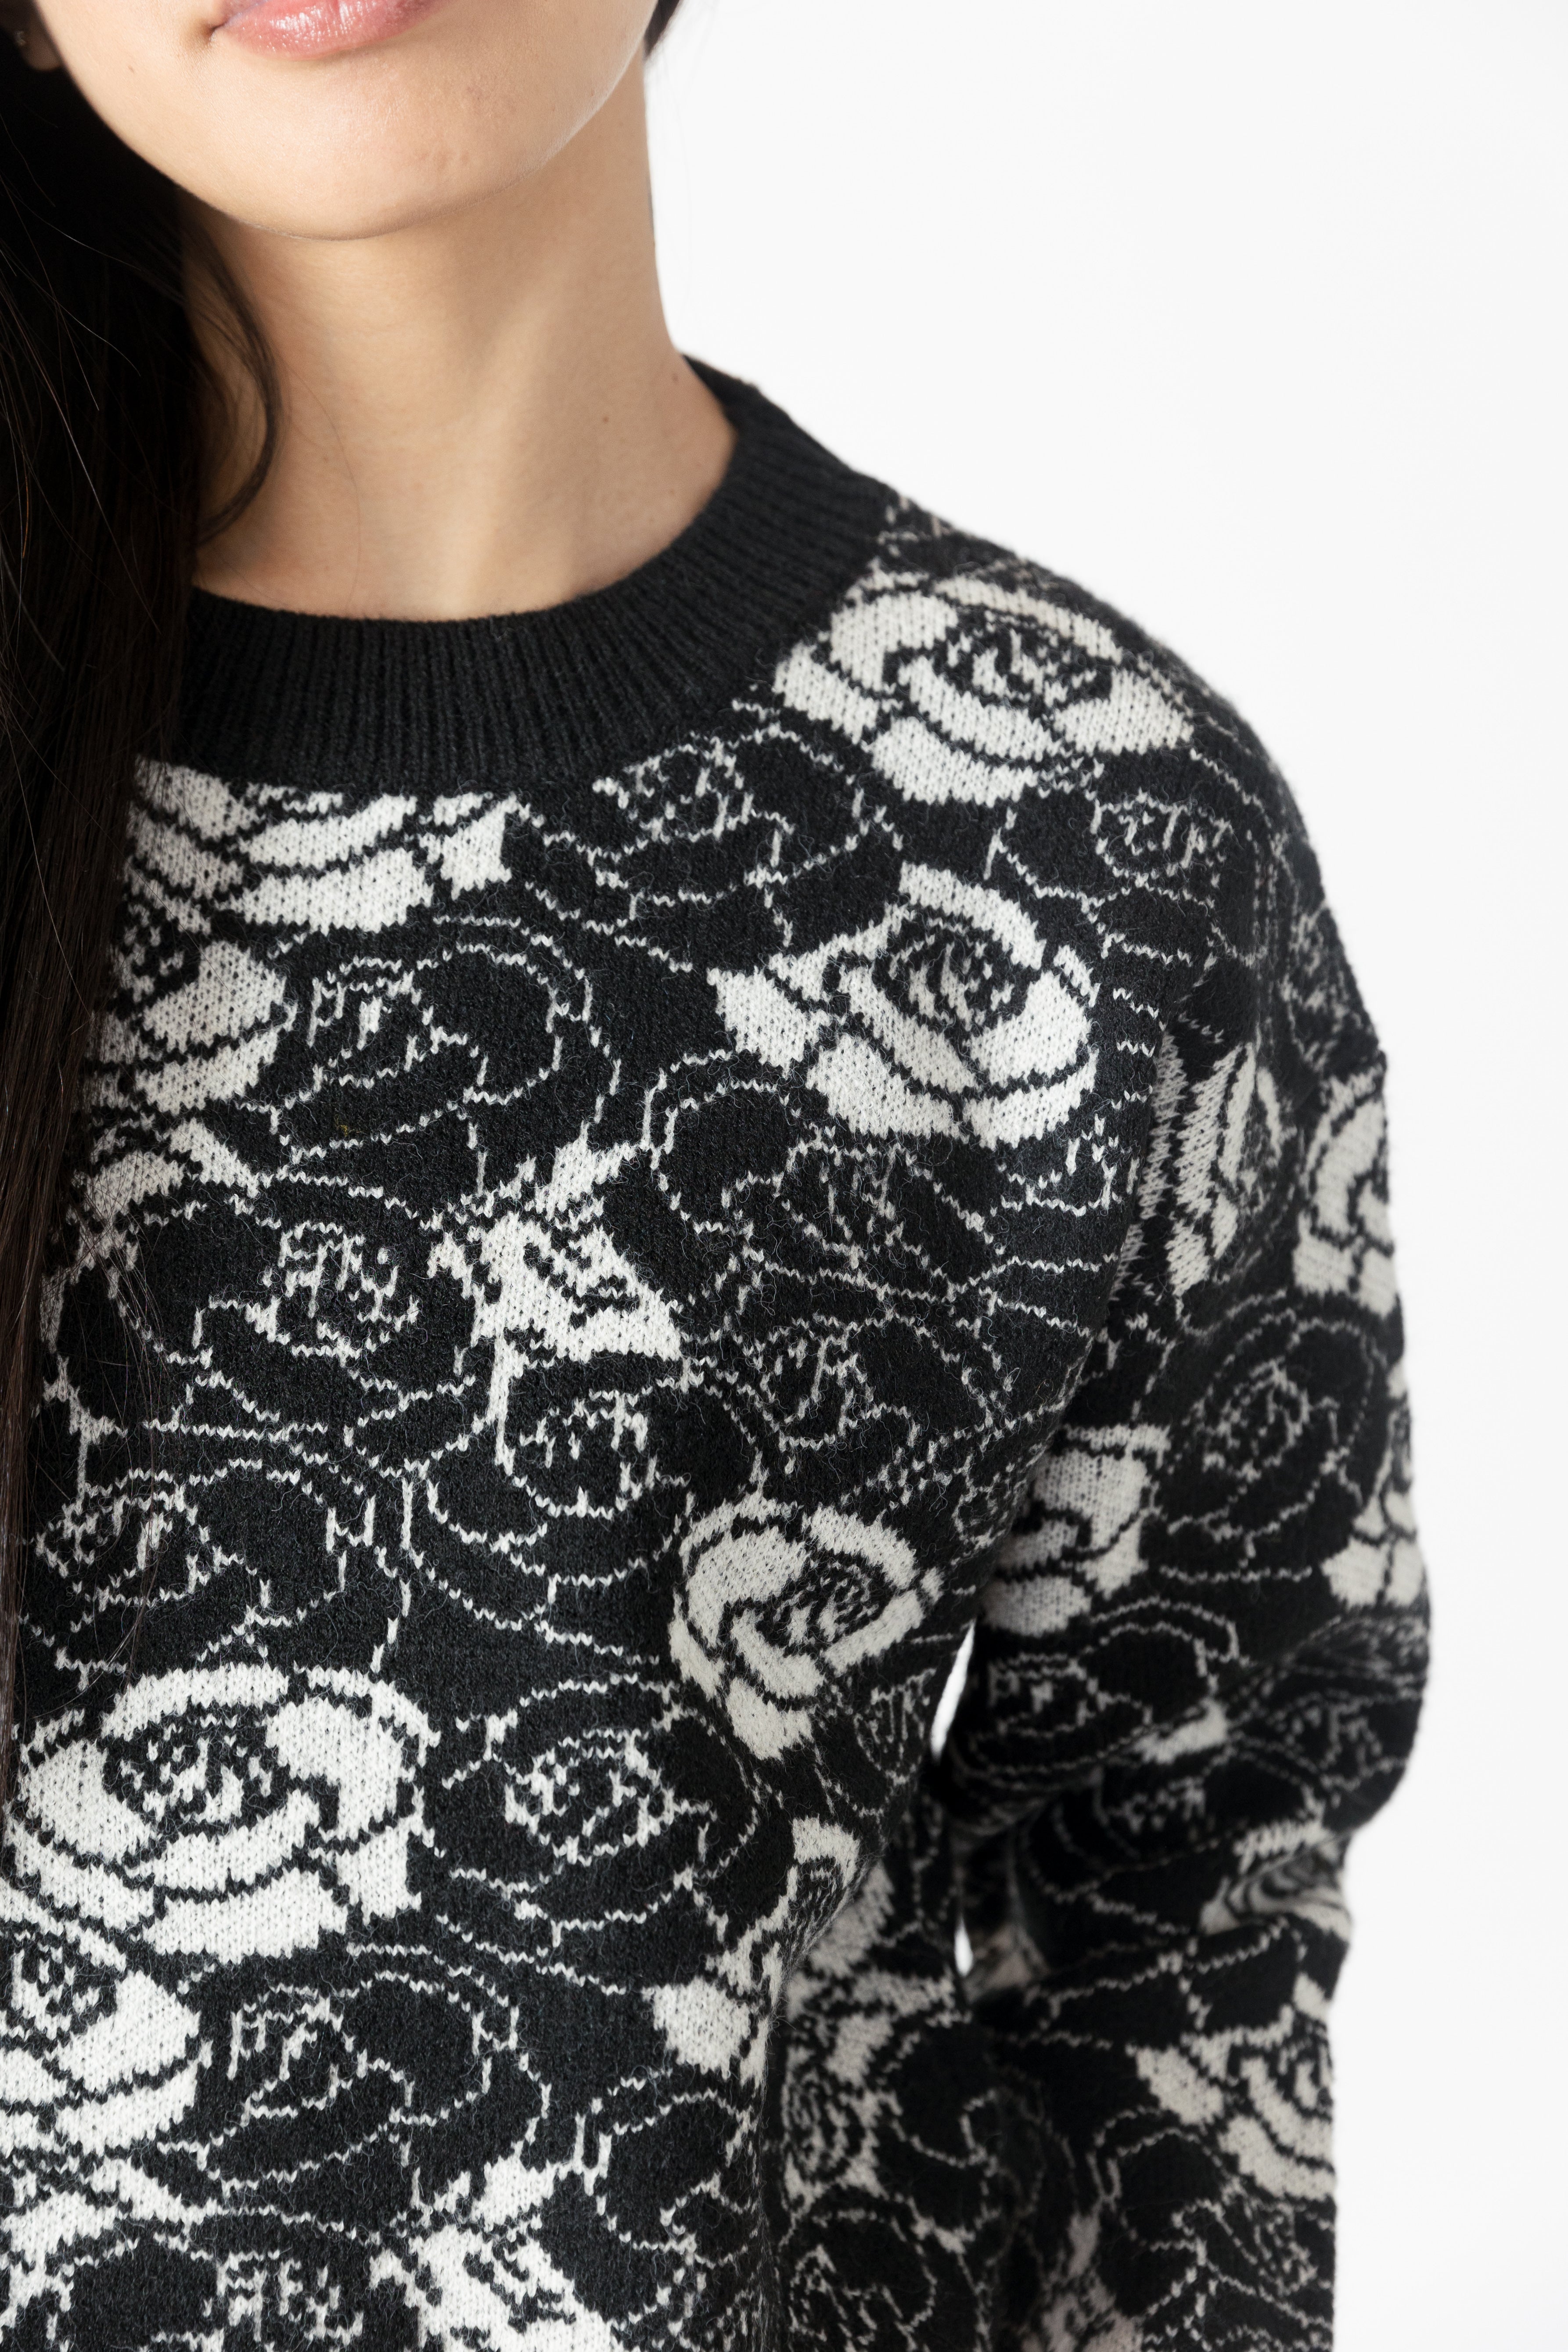 model wearing jordyn rose print crew neck sweater from lyla & luxe, detail view